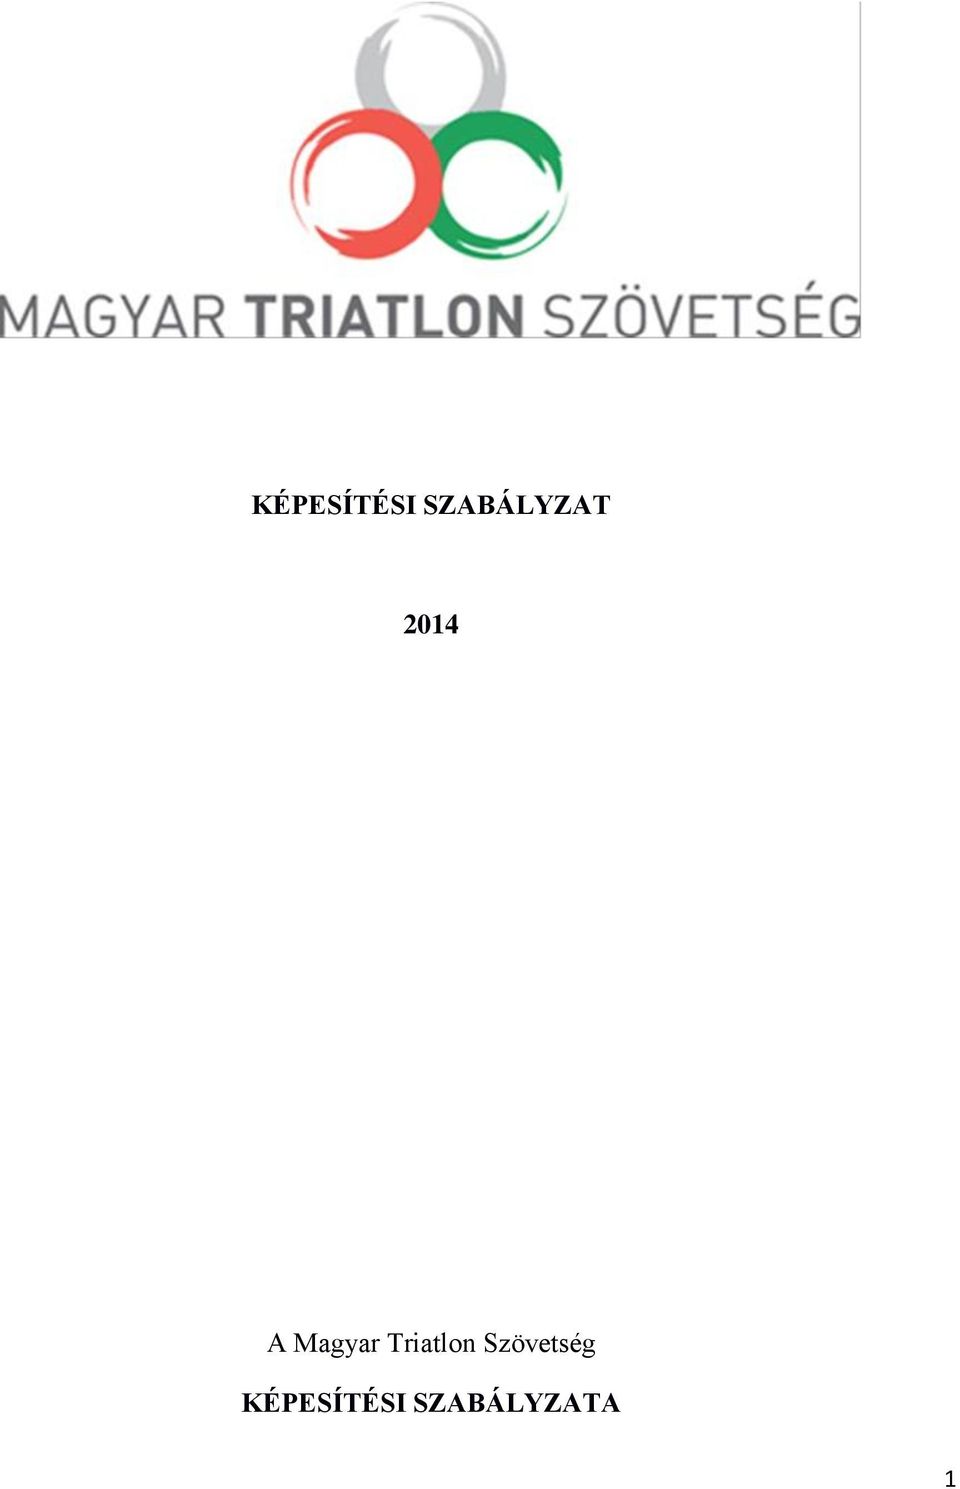 Magyar Triatlon